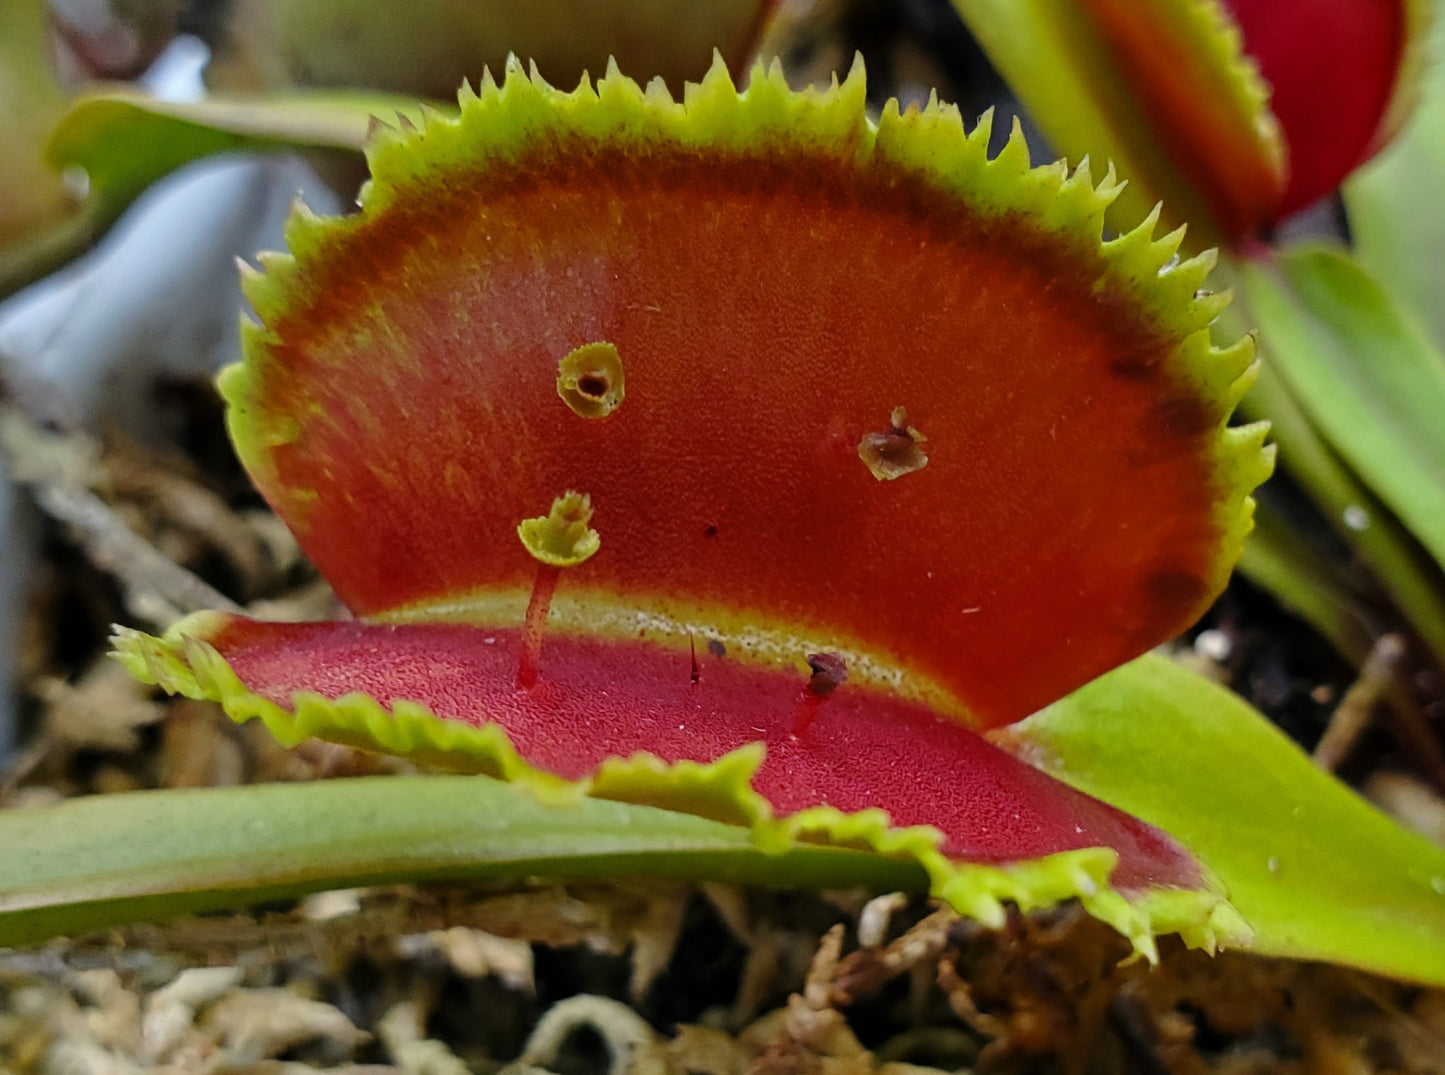 FTS Lunatic Fringe - Venus Flytrap Carnivorous Plant